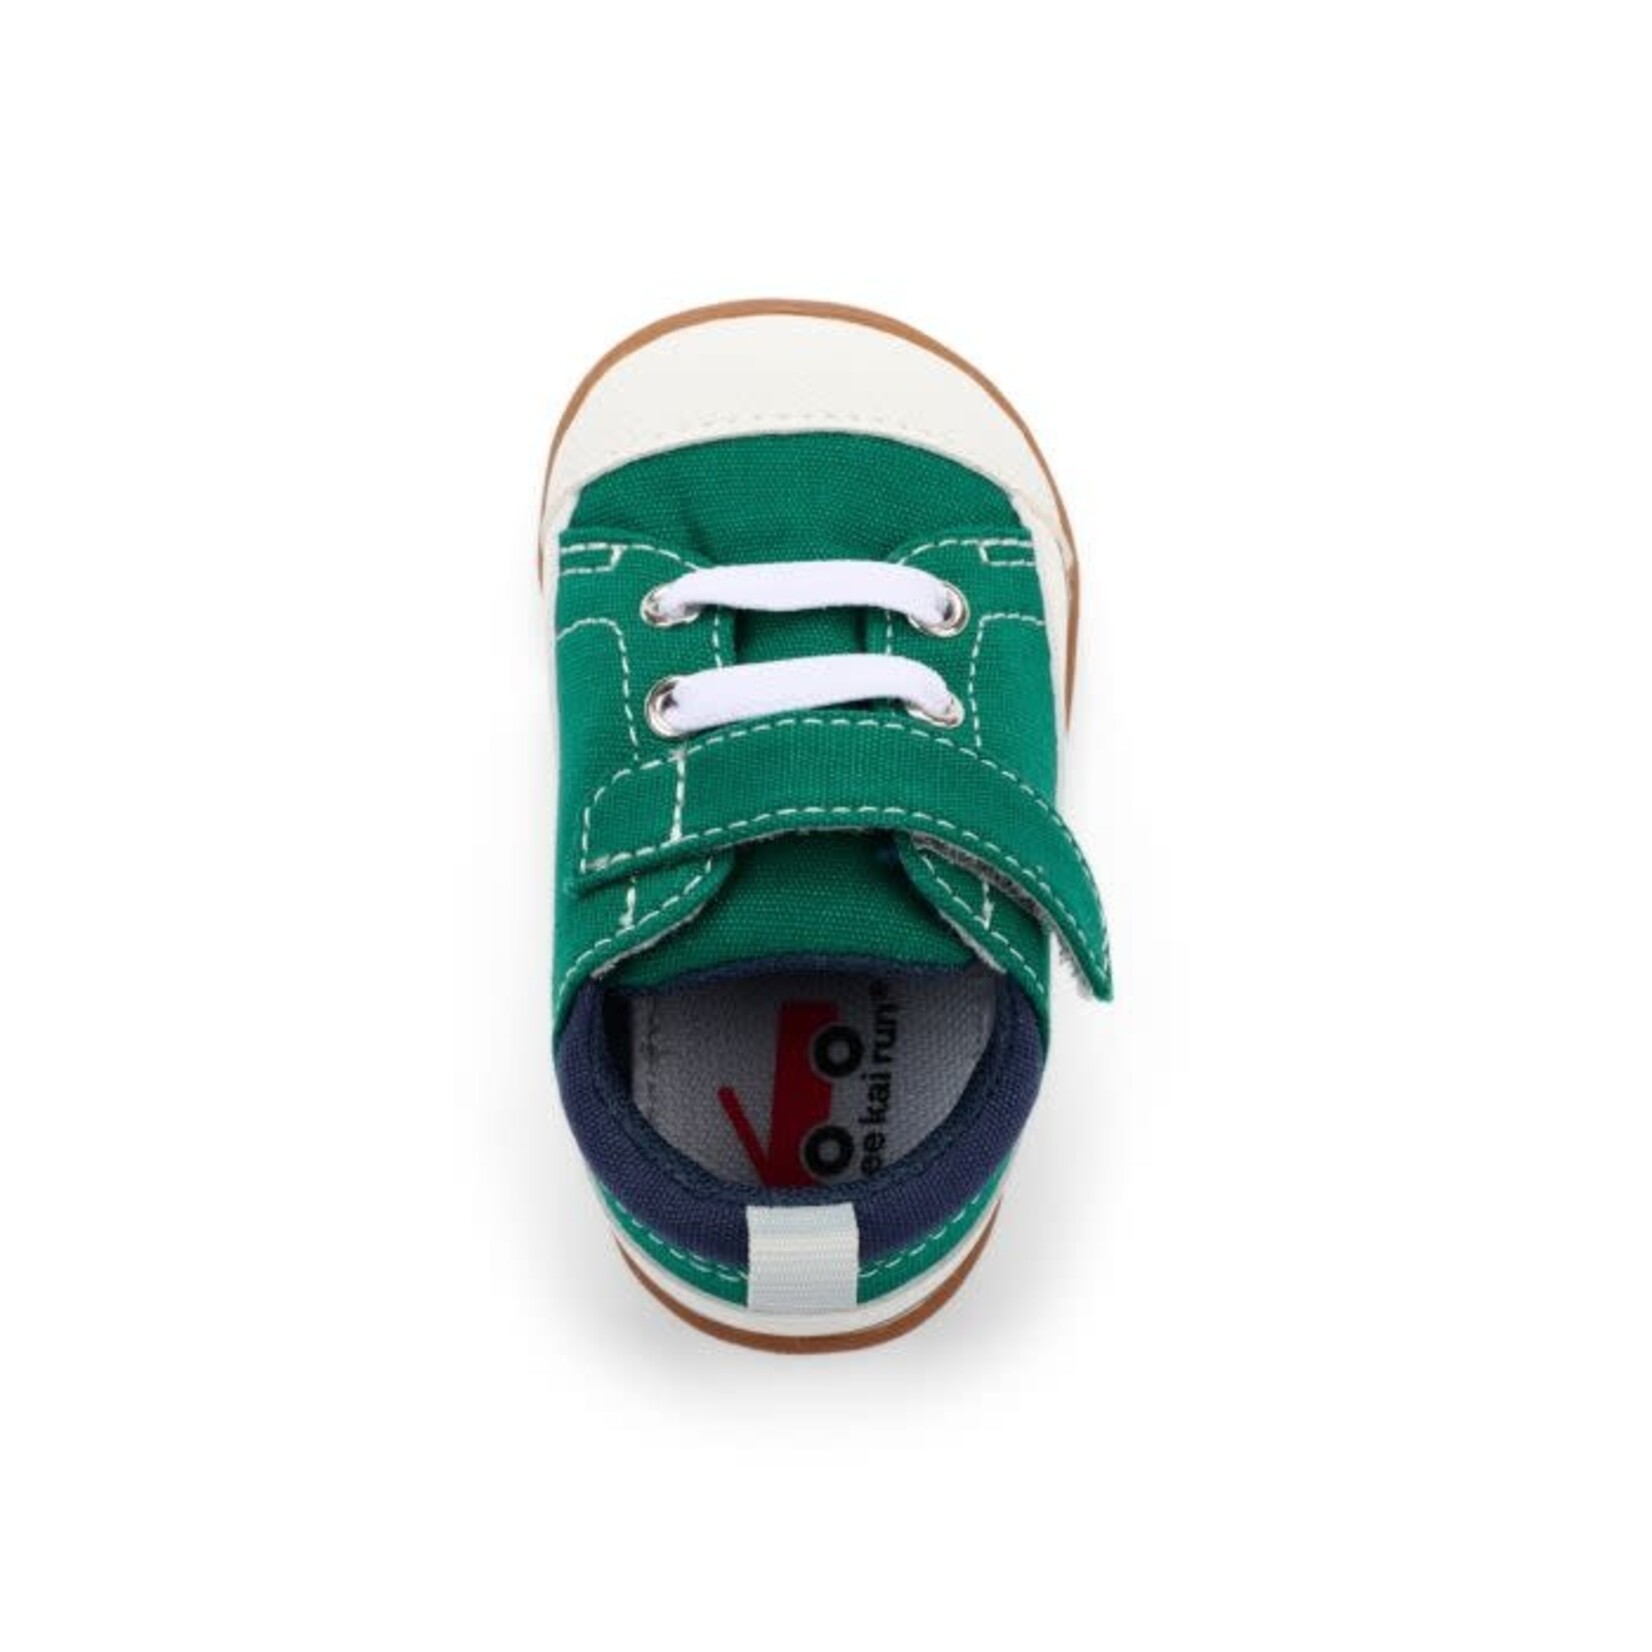 See Kai Run SEE KAI RUN - Flexible First Walker Transition Shoes 'Stevie II INF - Green'